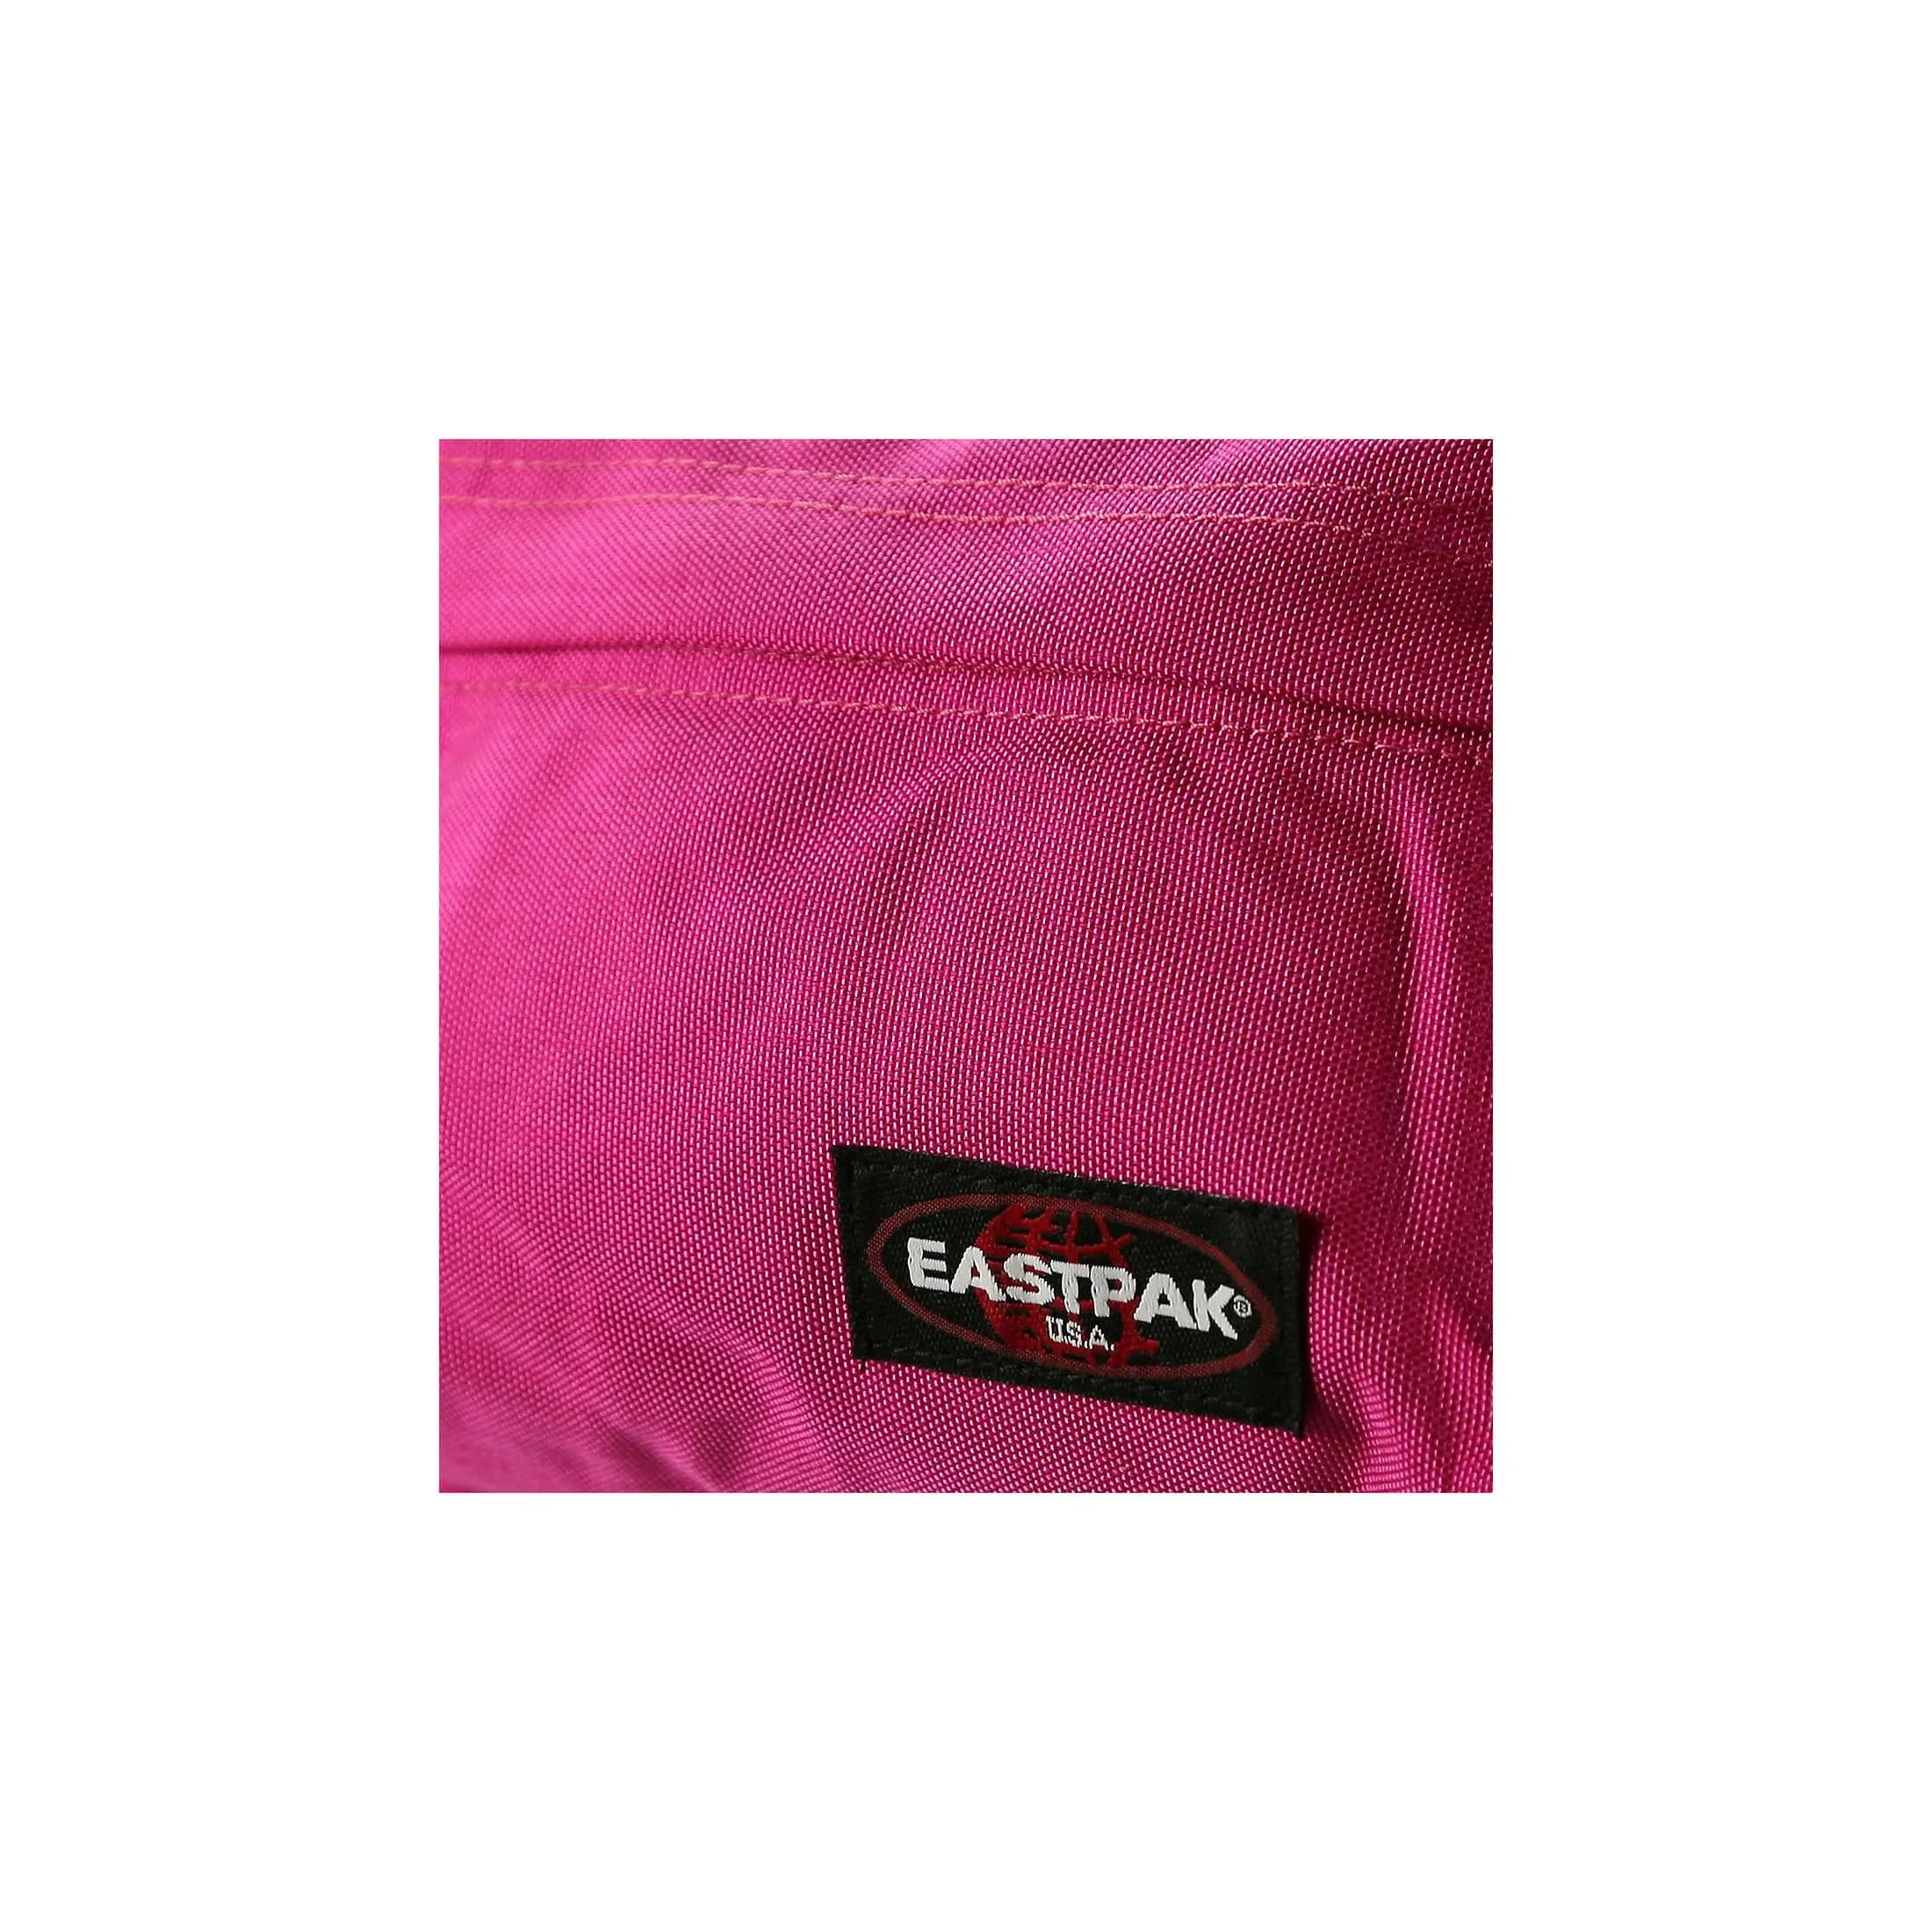 Eastpak Authentic Orbit sac à dos de loisirs 33 cm - triple denim